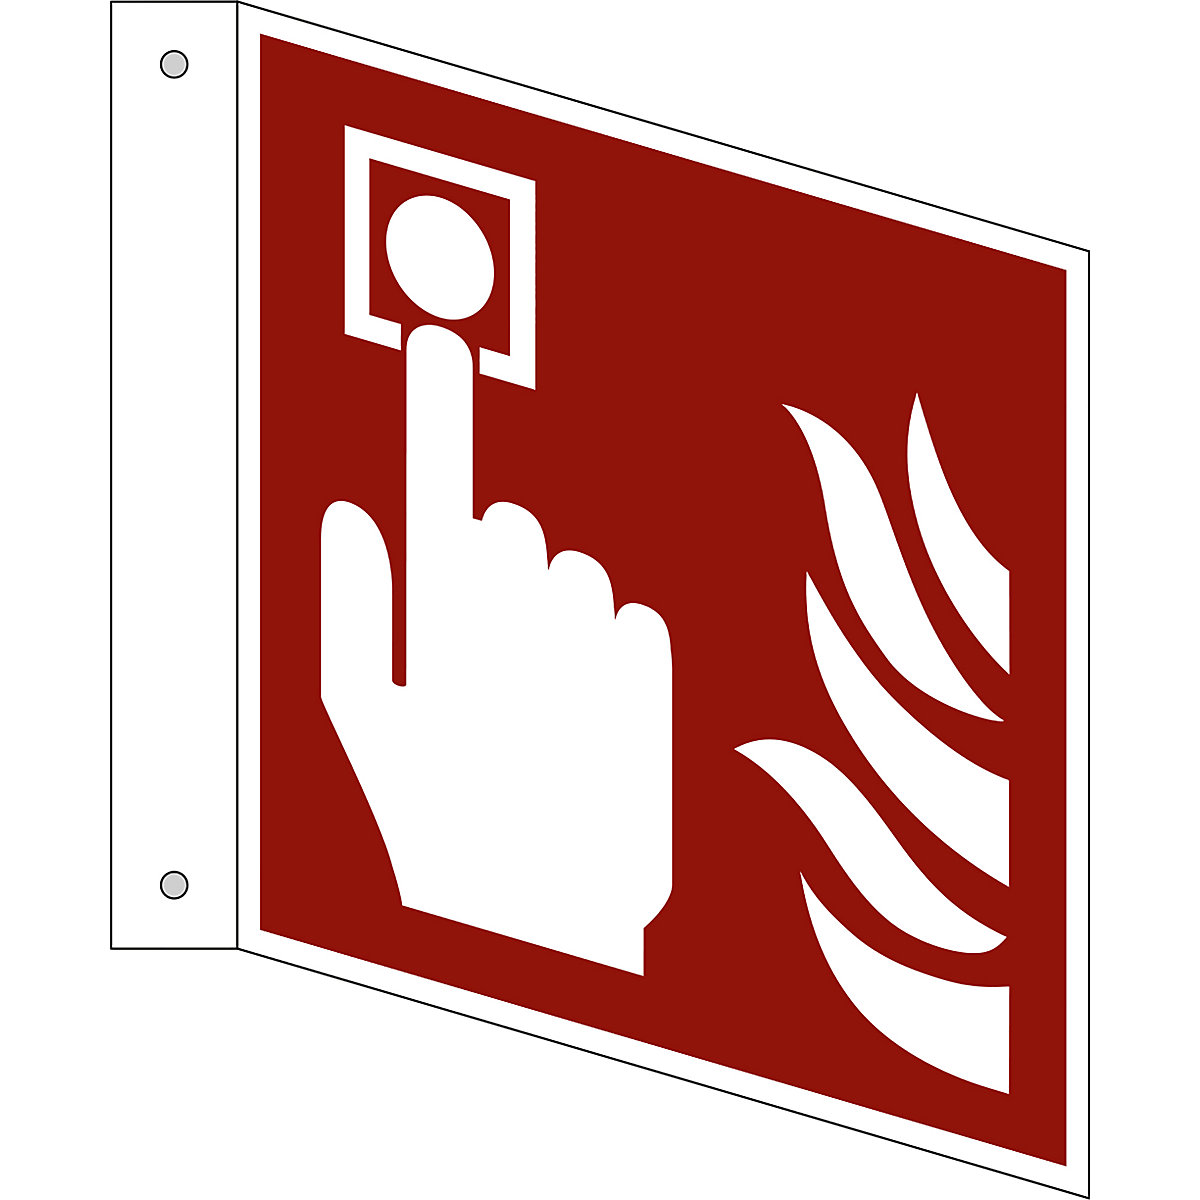 Značka pro ochranu proti požáru, požární hlásič, bal.j. 10 ks, plast, vlajkový štítek, 150 x 150 mm